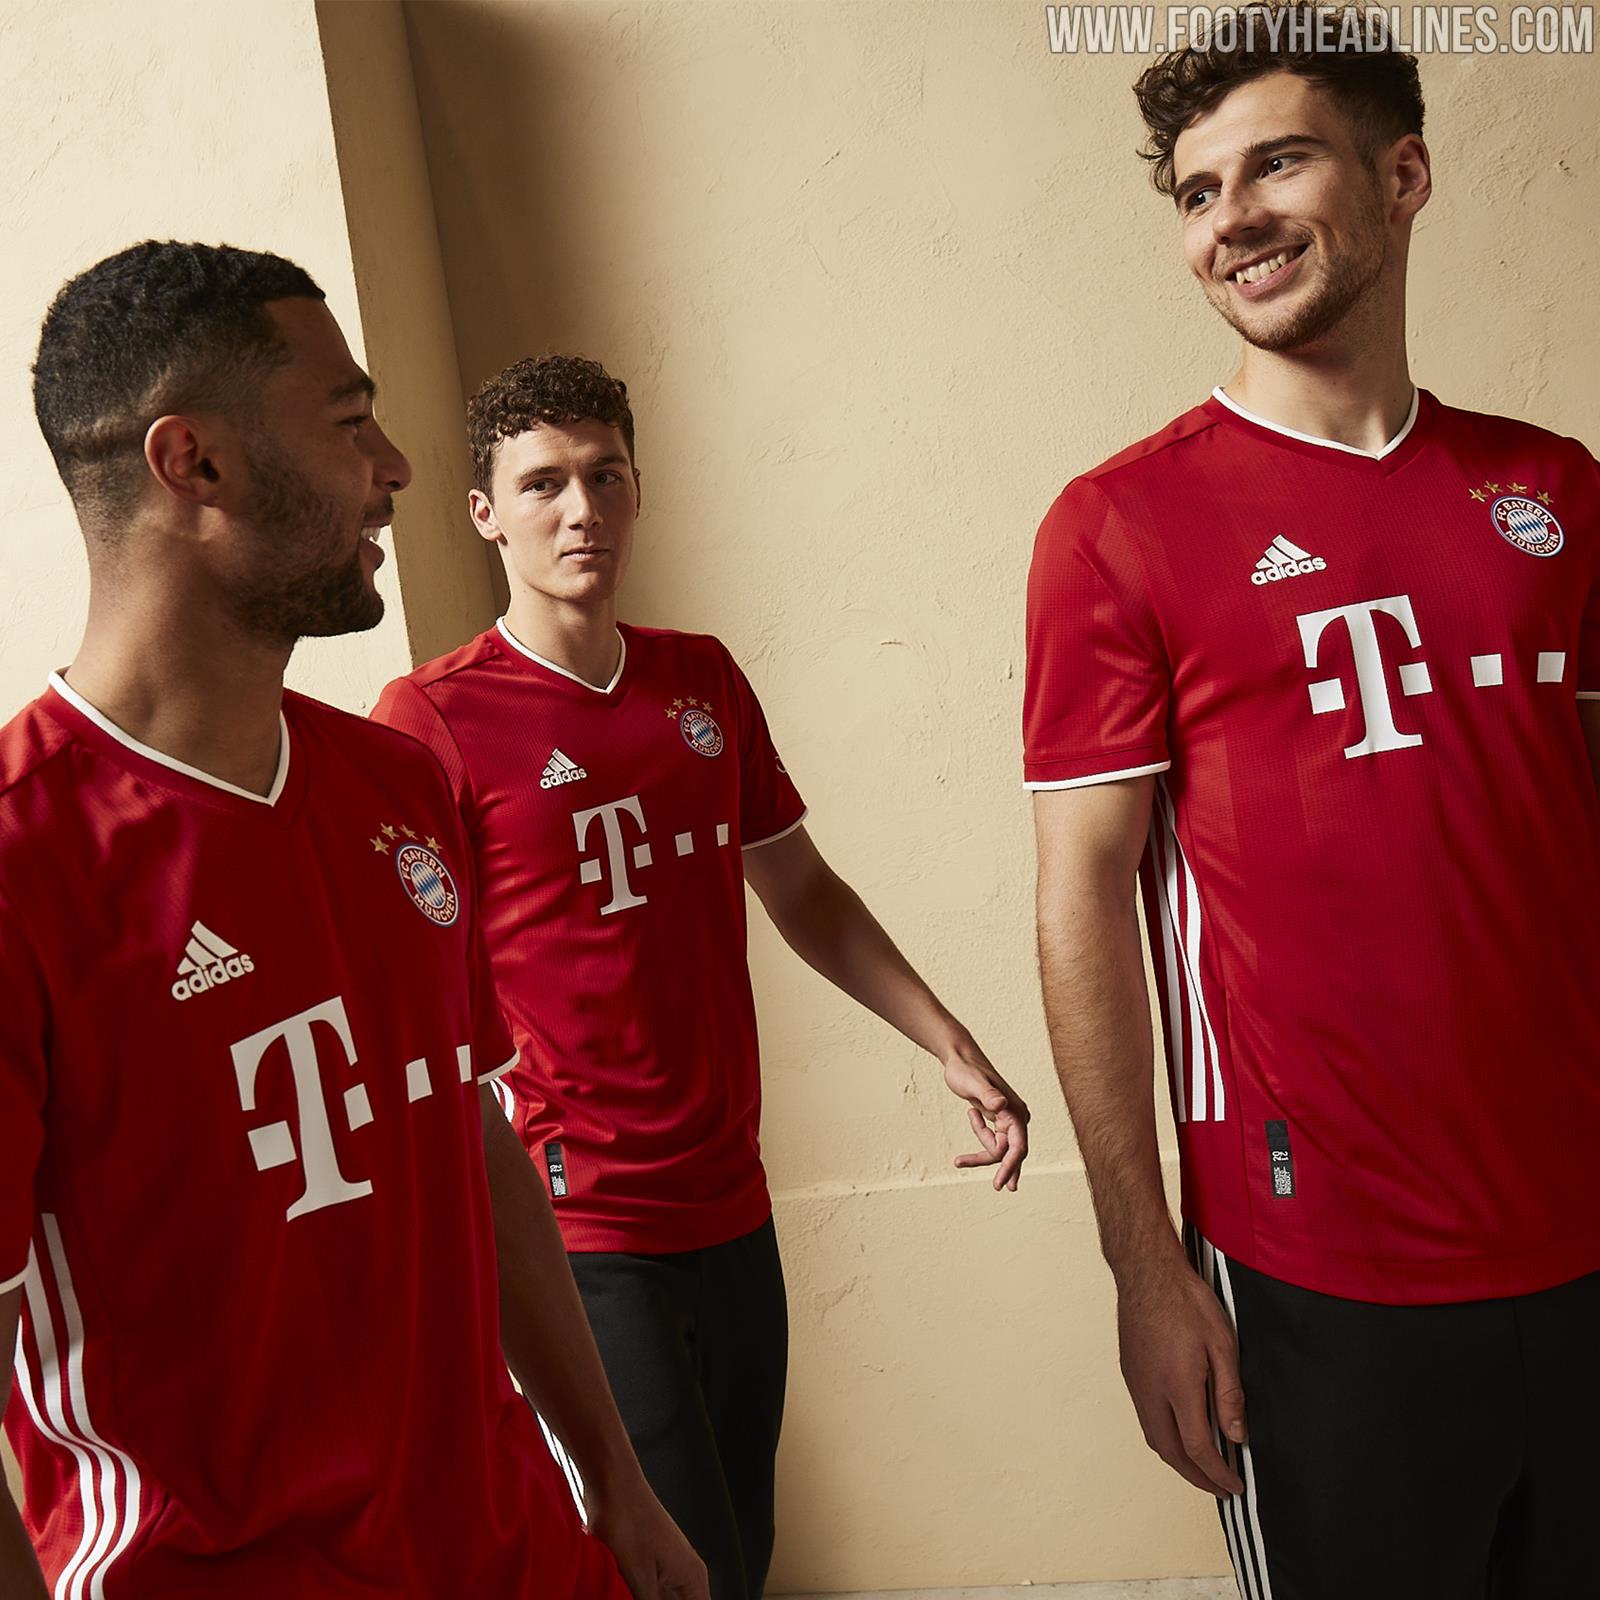 Bayern Munich Launch 2020/21 adidas Third Kit Inspired by Allianz Arena